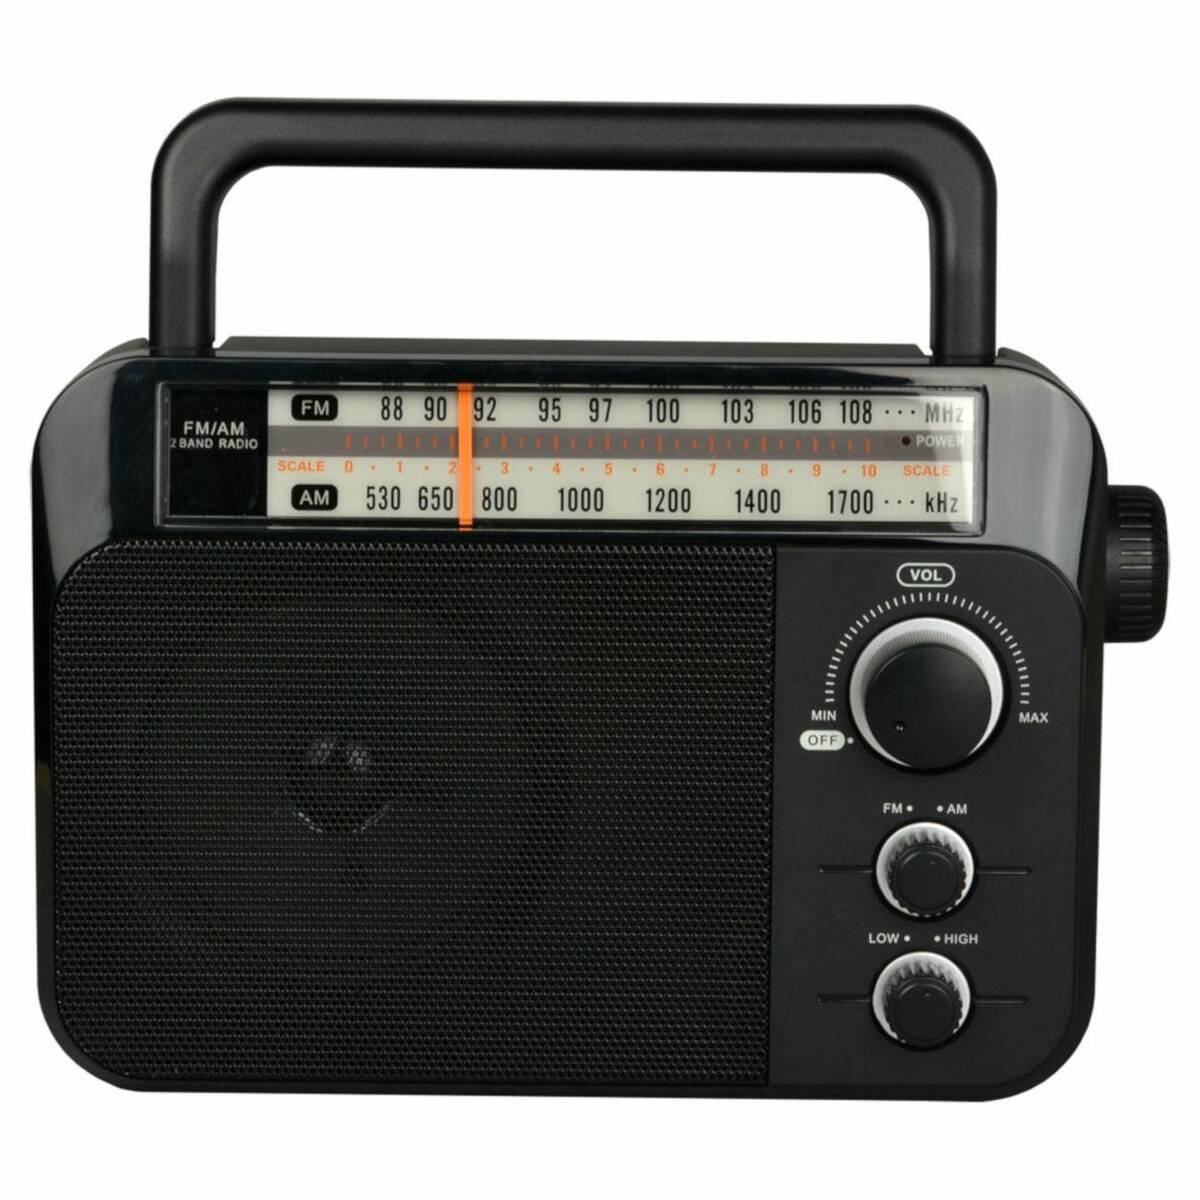 DARTEL RADIO RD18 czarne (Zdjęcie 2)